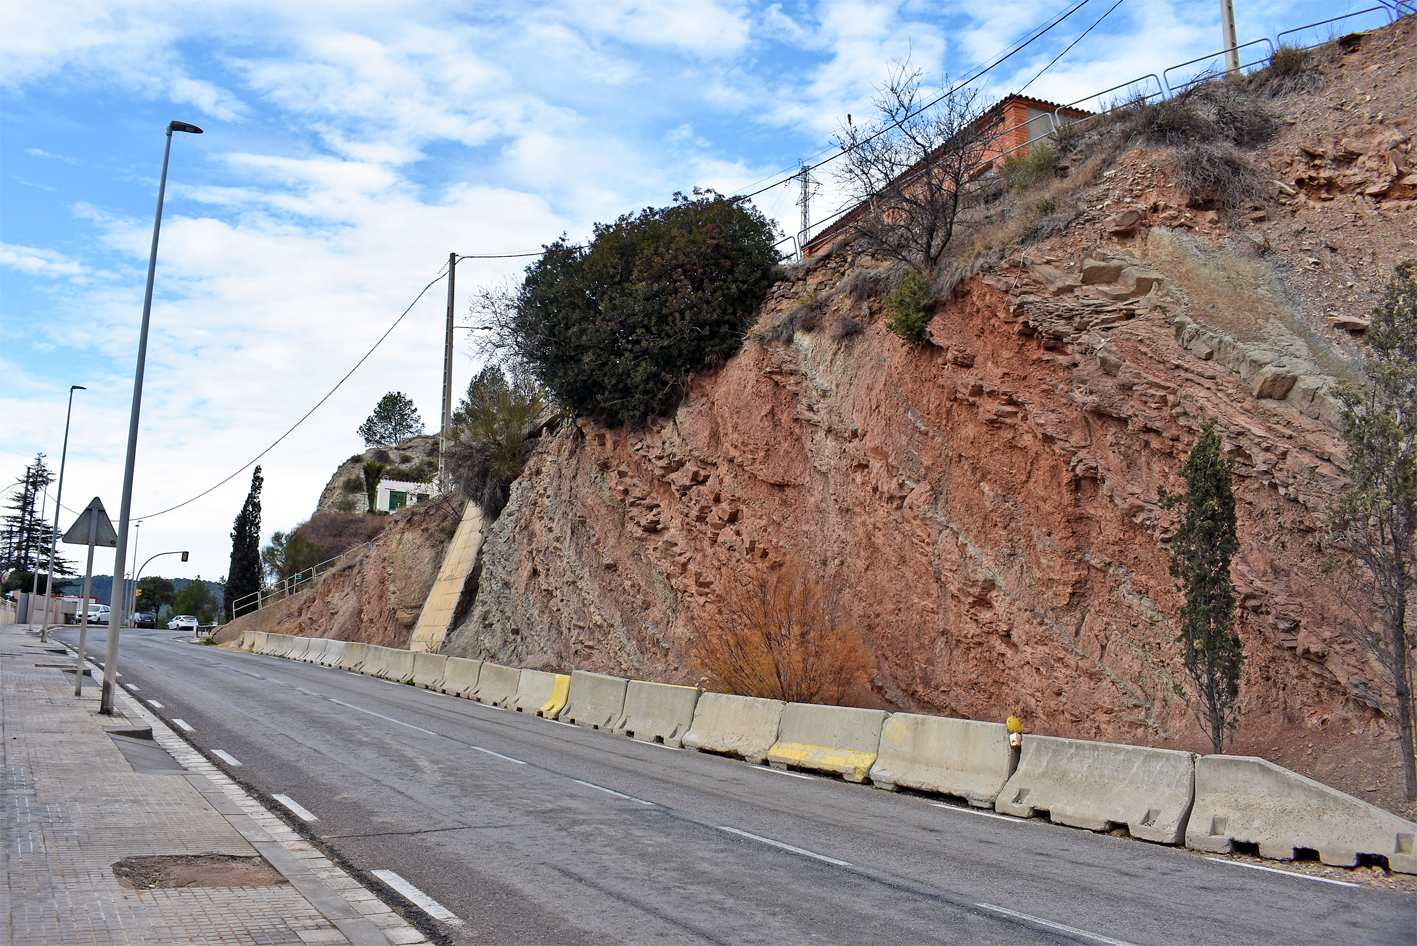 Les obres d'estabilització del talús del carrer Pirineu començaran a partir del dilluns 8 de gener, incloent-hi millores d'accessibilitat